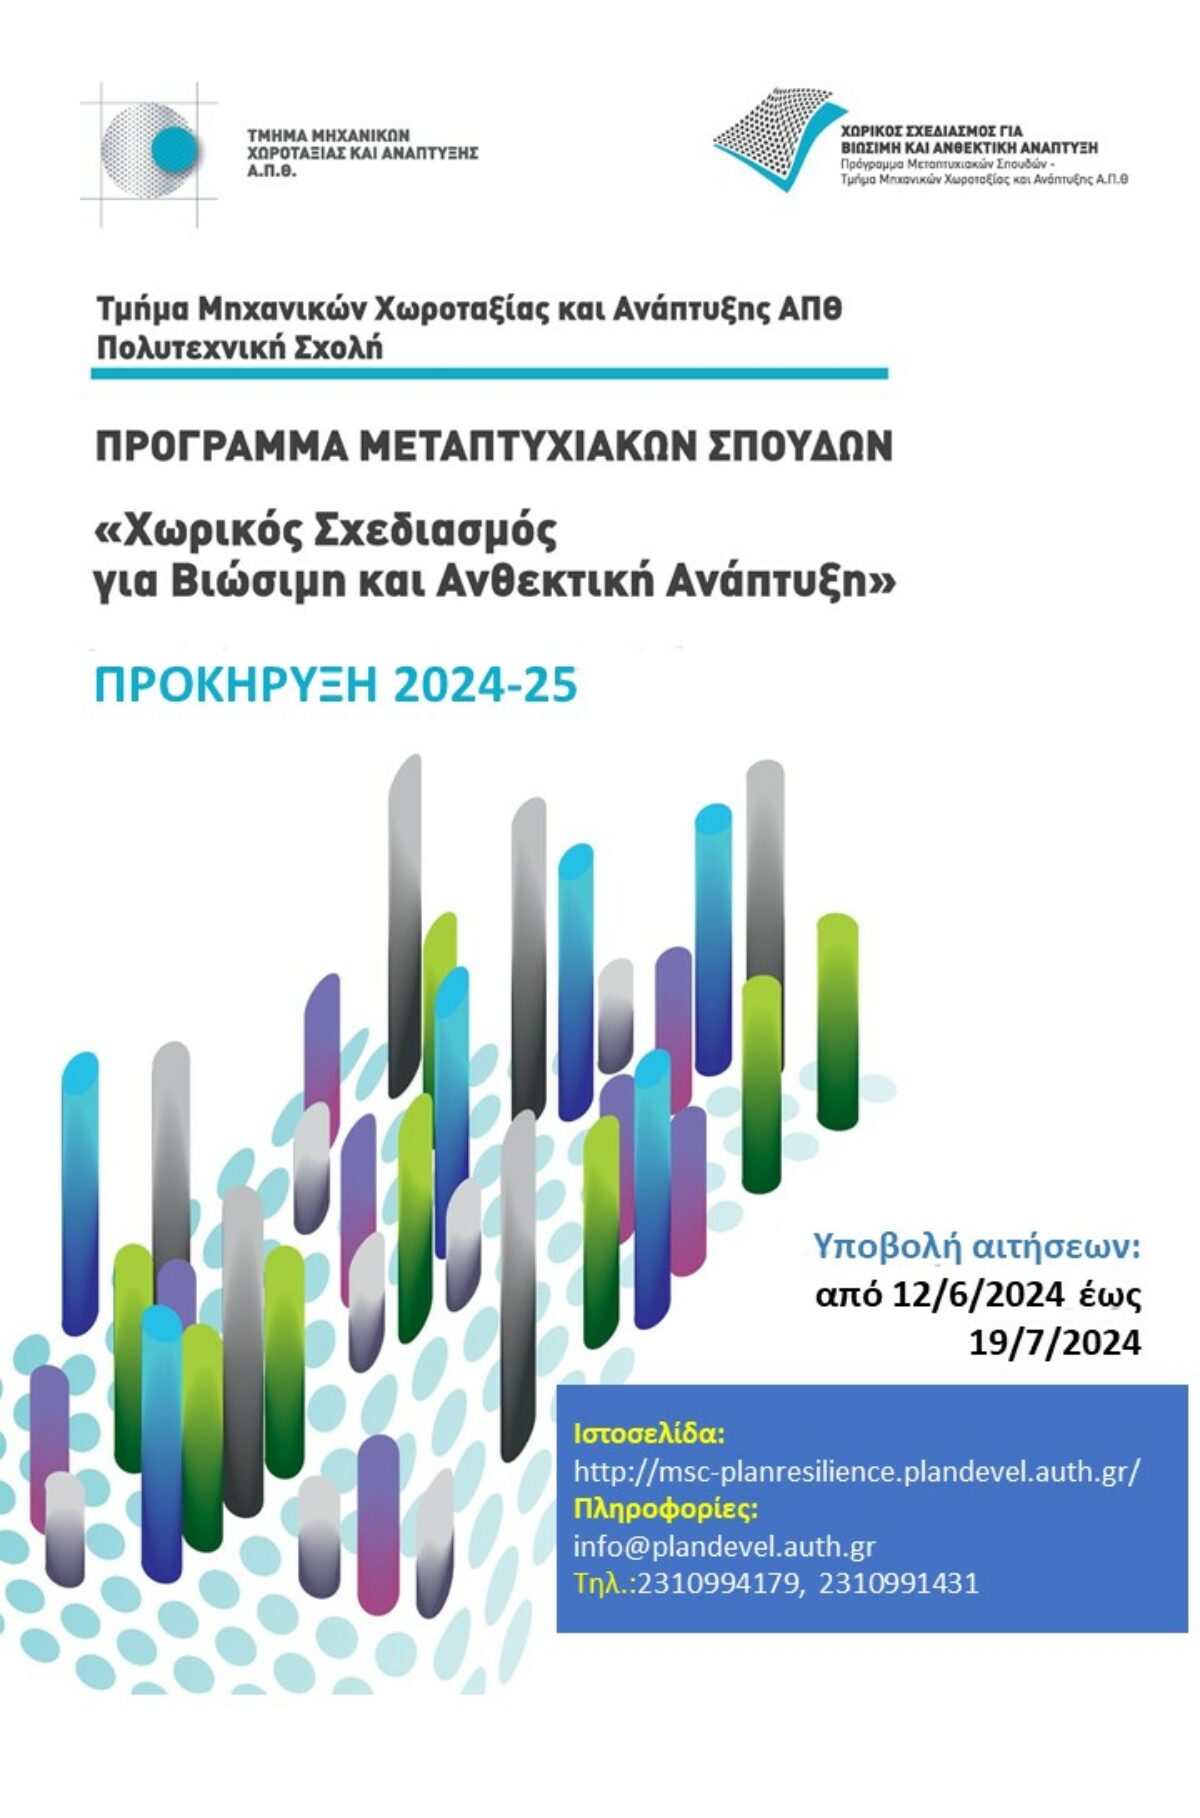 Πρόγραμμα Μεταπτυχιακών Σπουδών “ΧΩΡΙΚΟΣ ΣΧΕΔΙΑΣΜΟΣ ΓΙΑ ΒΙΩΣΙΜΗ ΚΑΙ ΑΝΘΕΚΤΙΚΗ ΑΝΑΠΤΥΞΗ” από το Τμήμα Μηχανικών Χωροταξίας και Ανάπτυξης του ΑΠΘ, για το Ακαδημαϊκό έτος 2024 – 2025